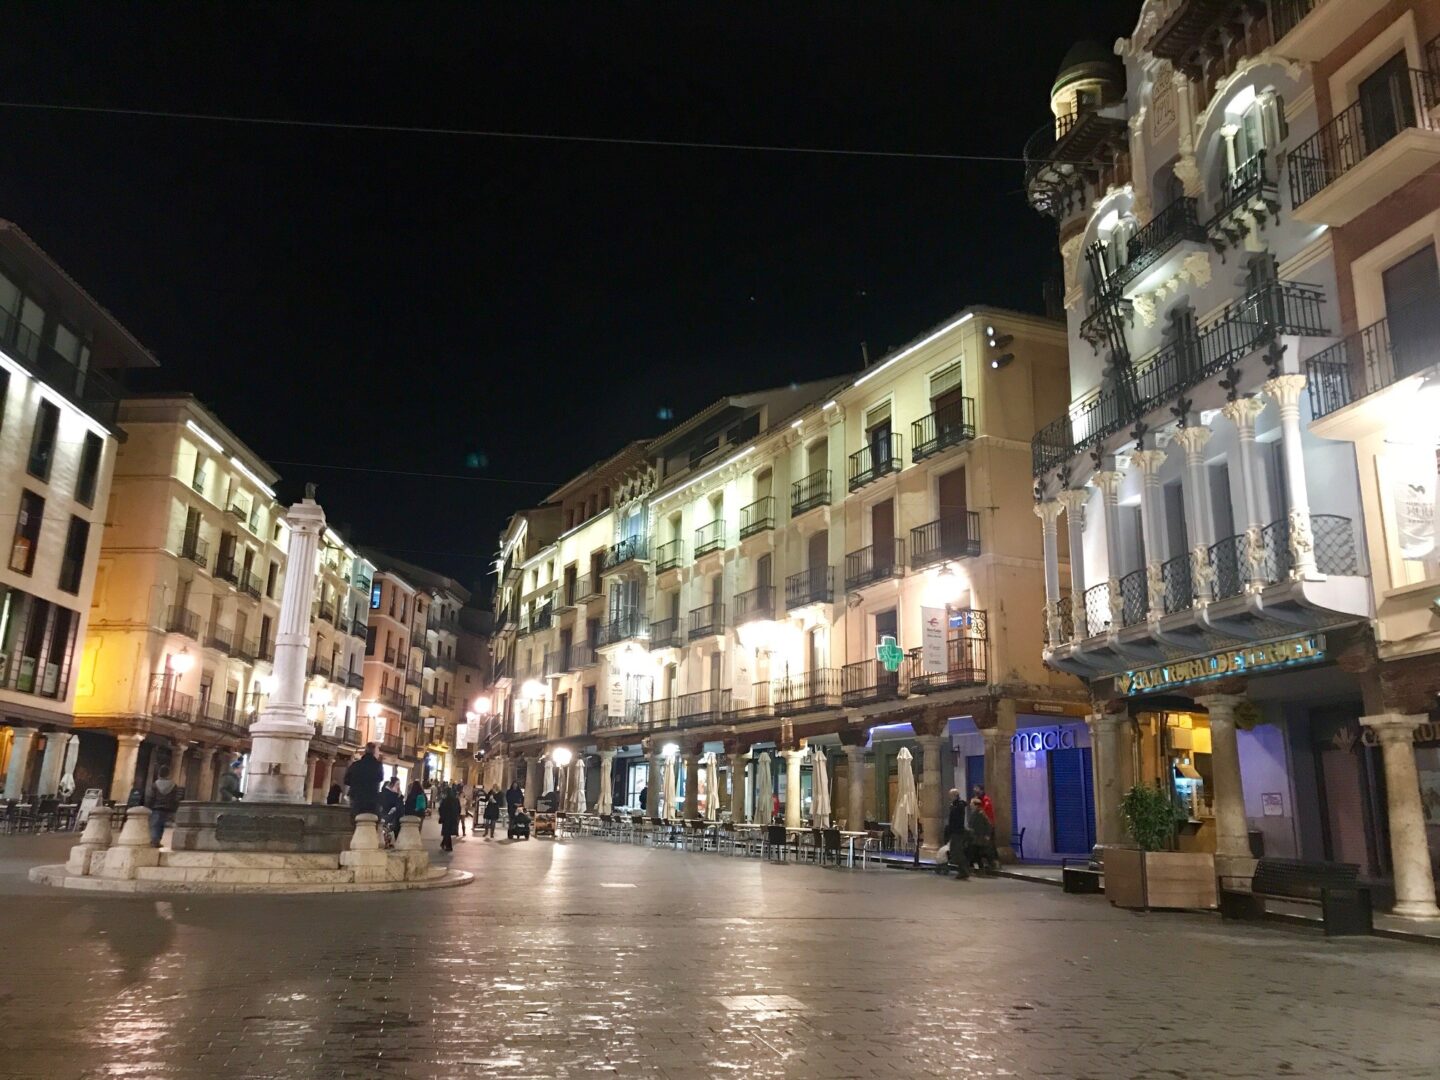 Night picture of Plaza del Turico in Teruel, Spain.